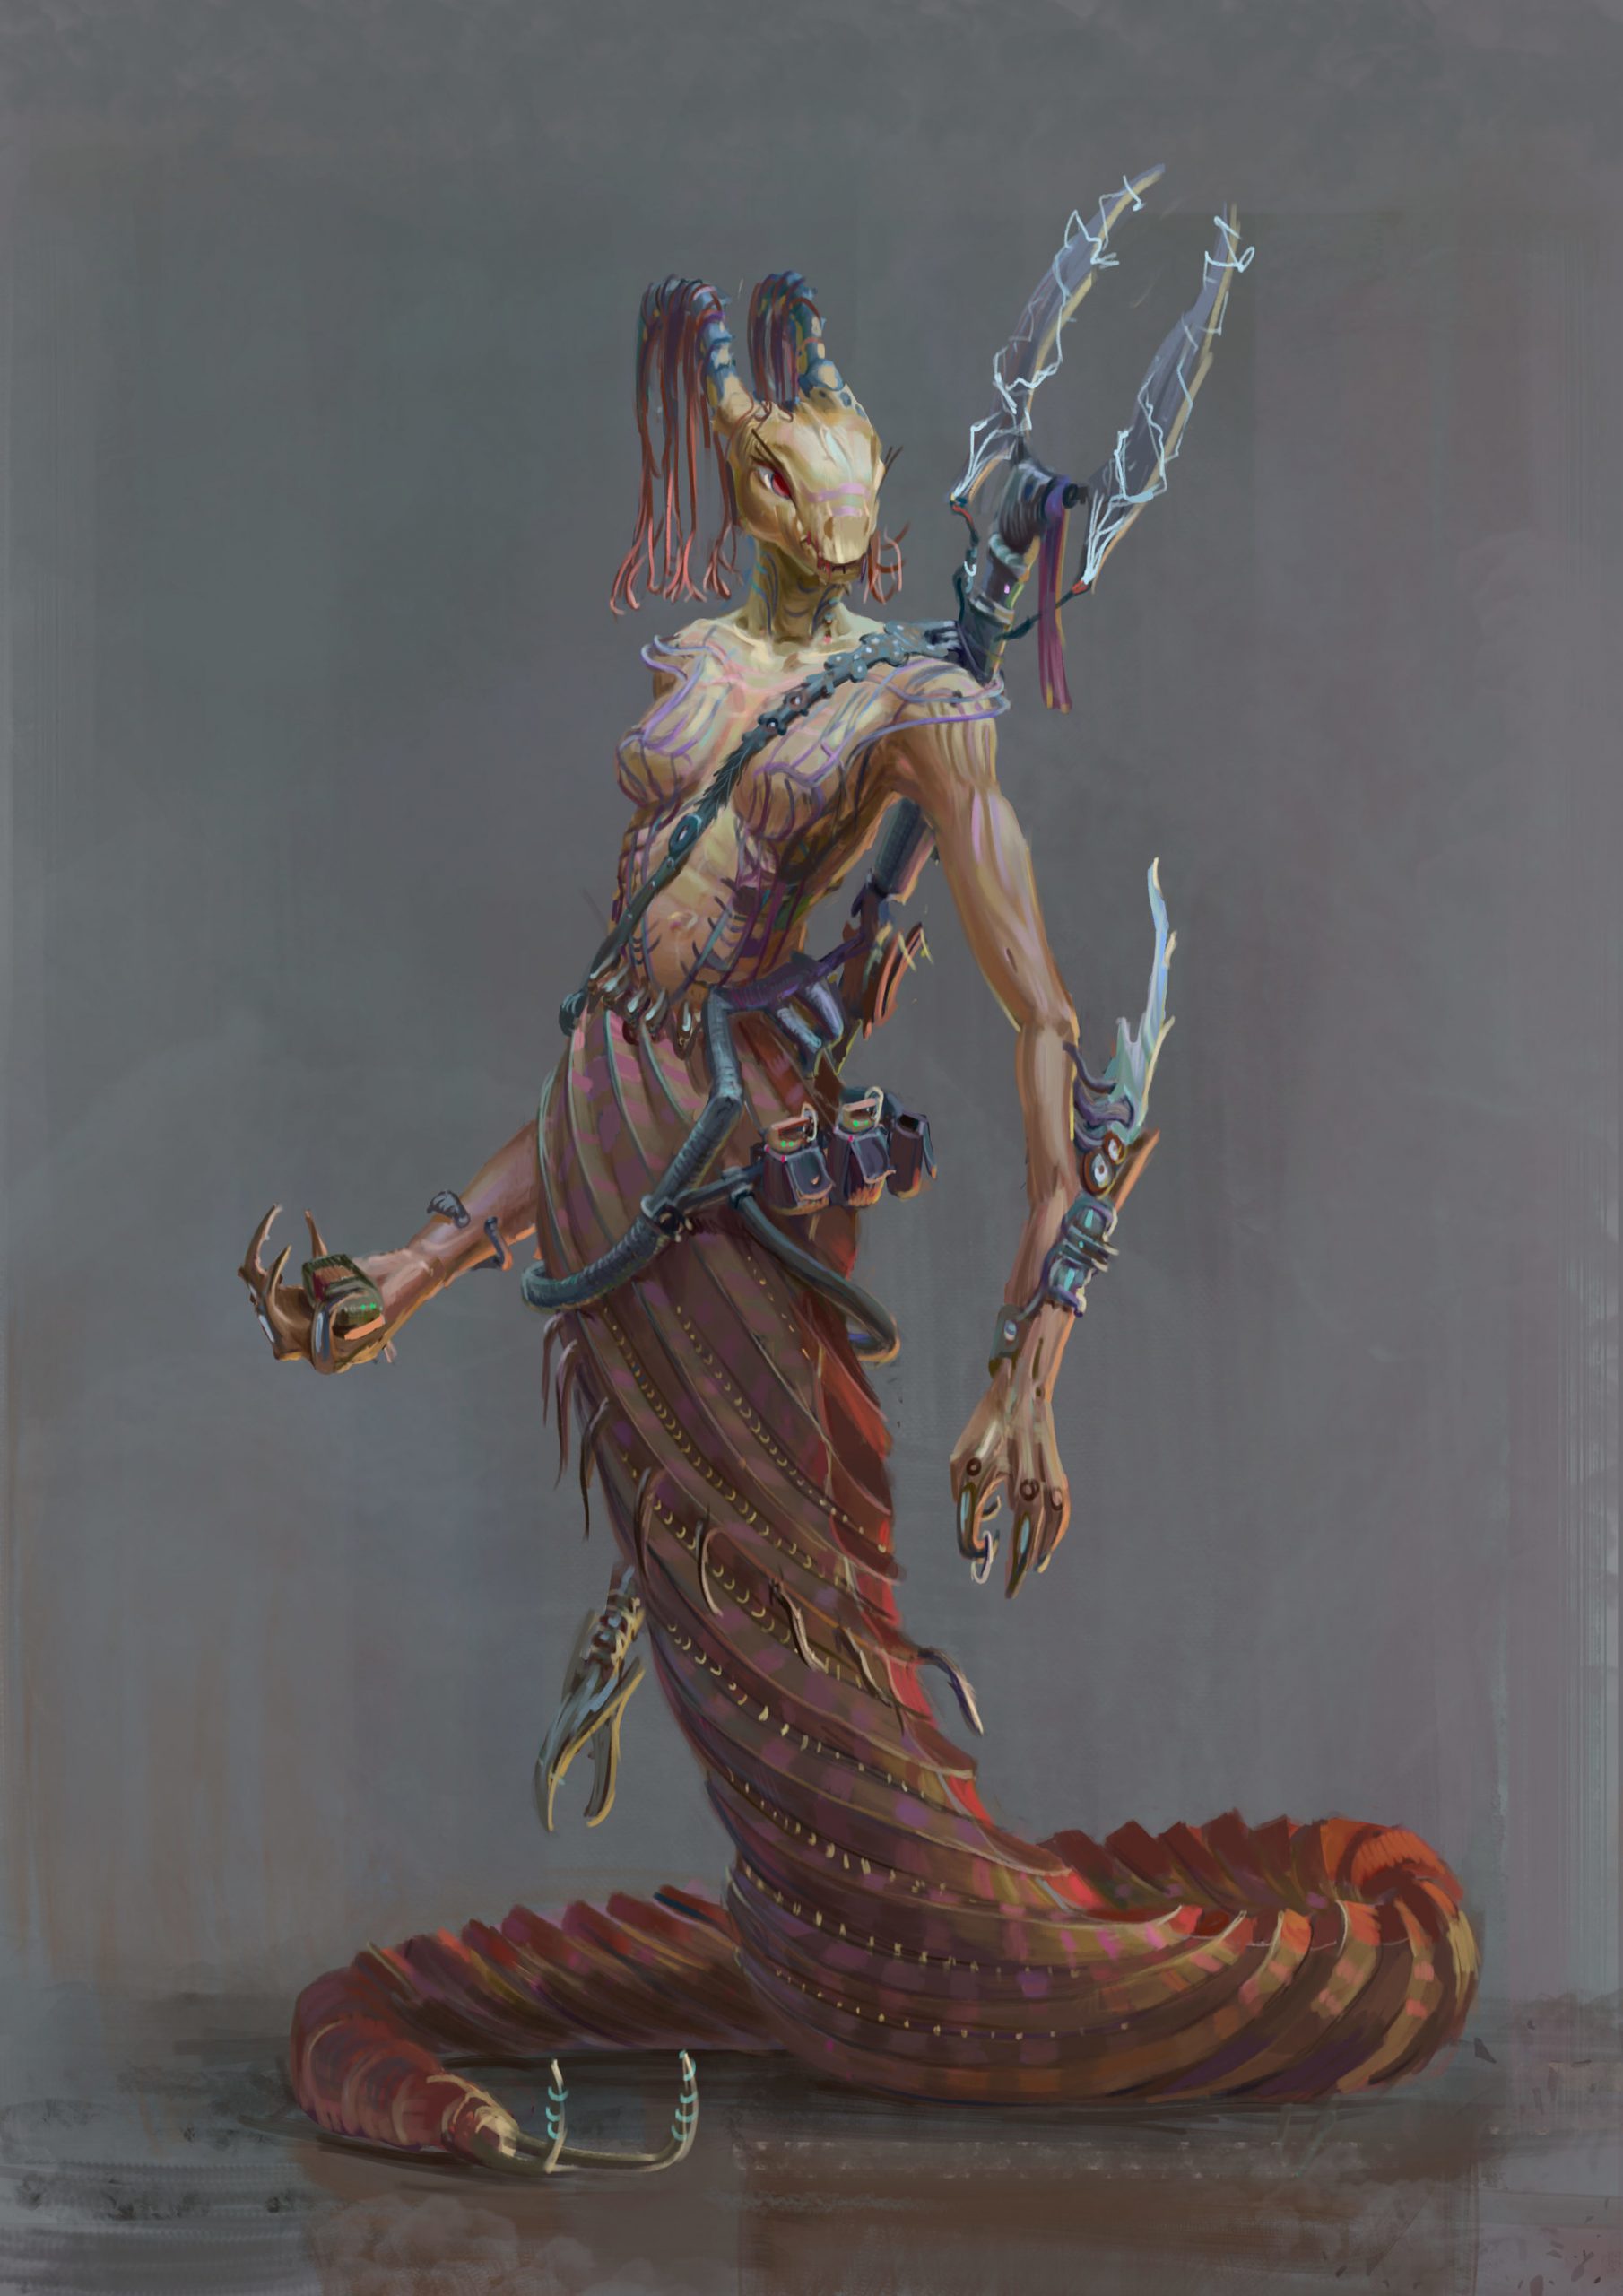 Alien cyborg-snake character by Eugene Jimenez Aristizabal